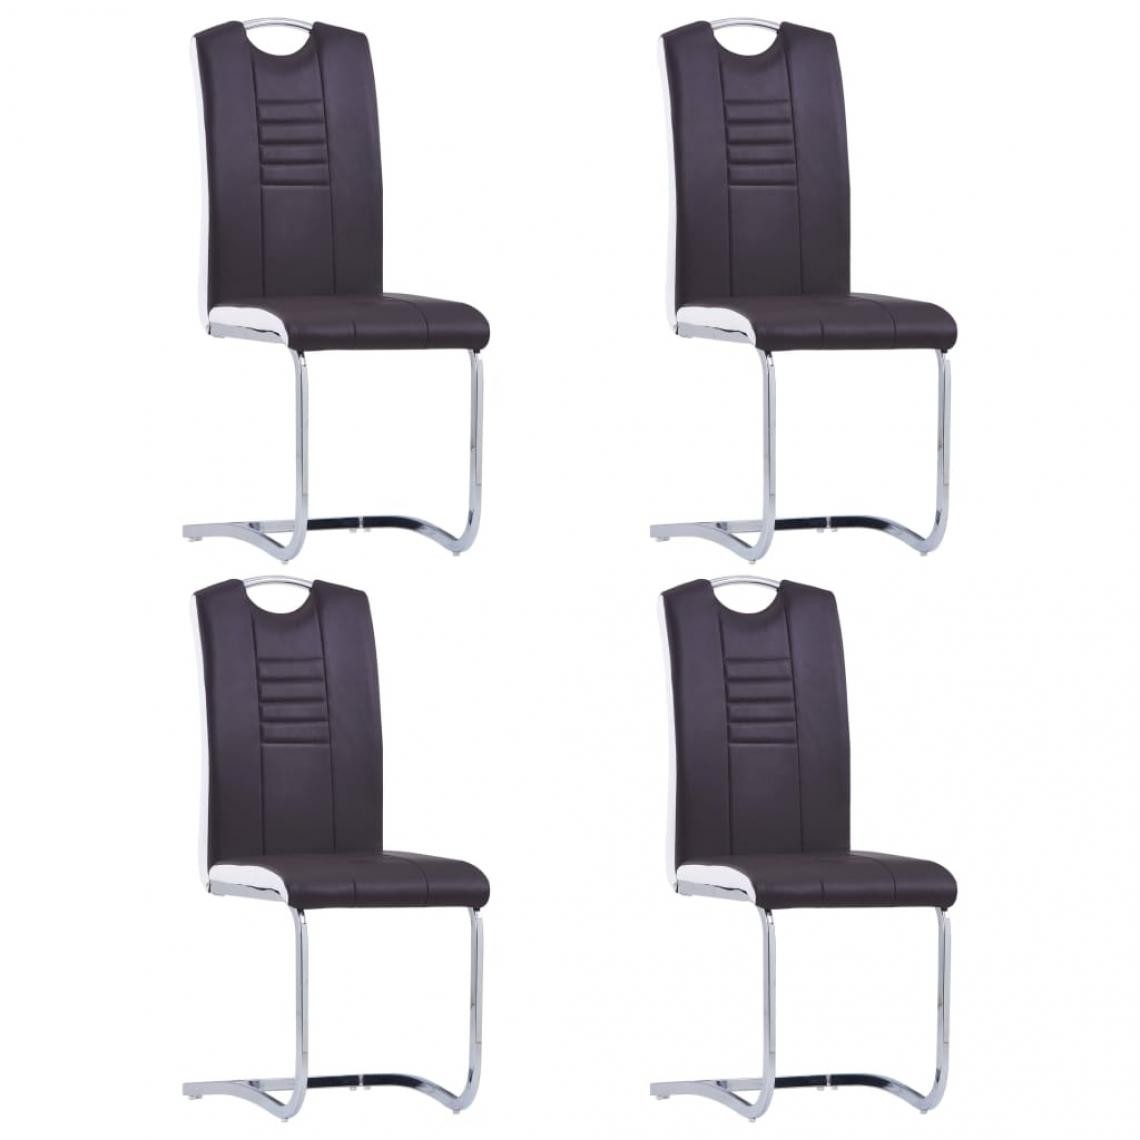 Decoshop26 - Lot de 4 chaises de salle à manger cuisine cantilever design moderne similicuir marron CDS021405 - Chaises